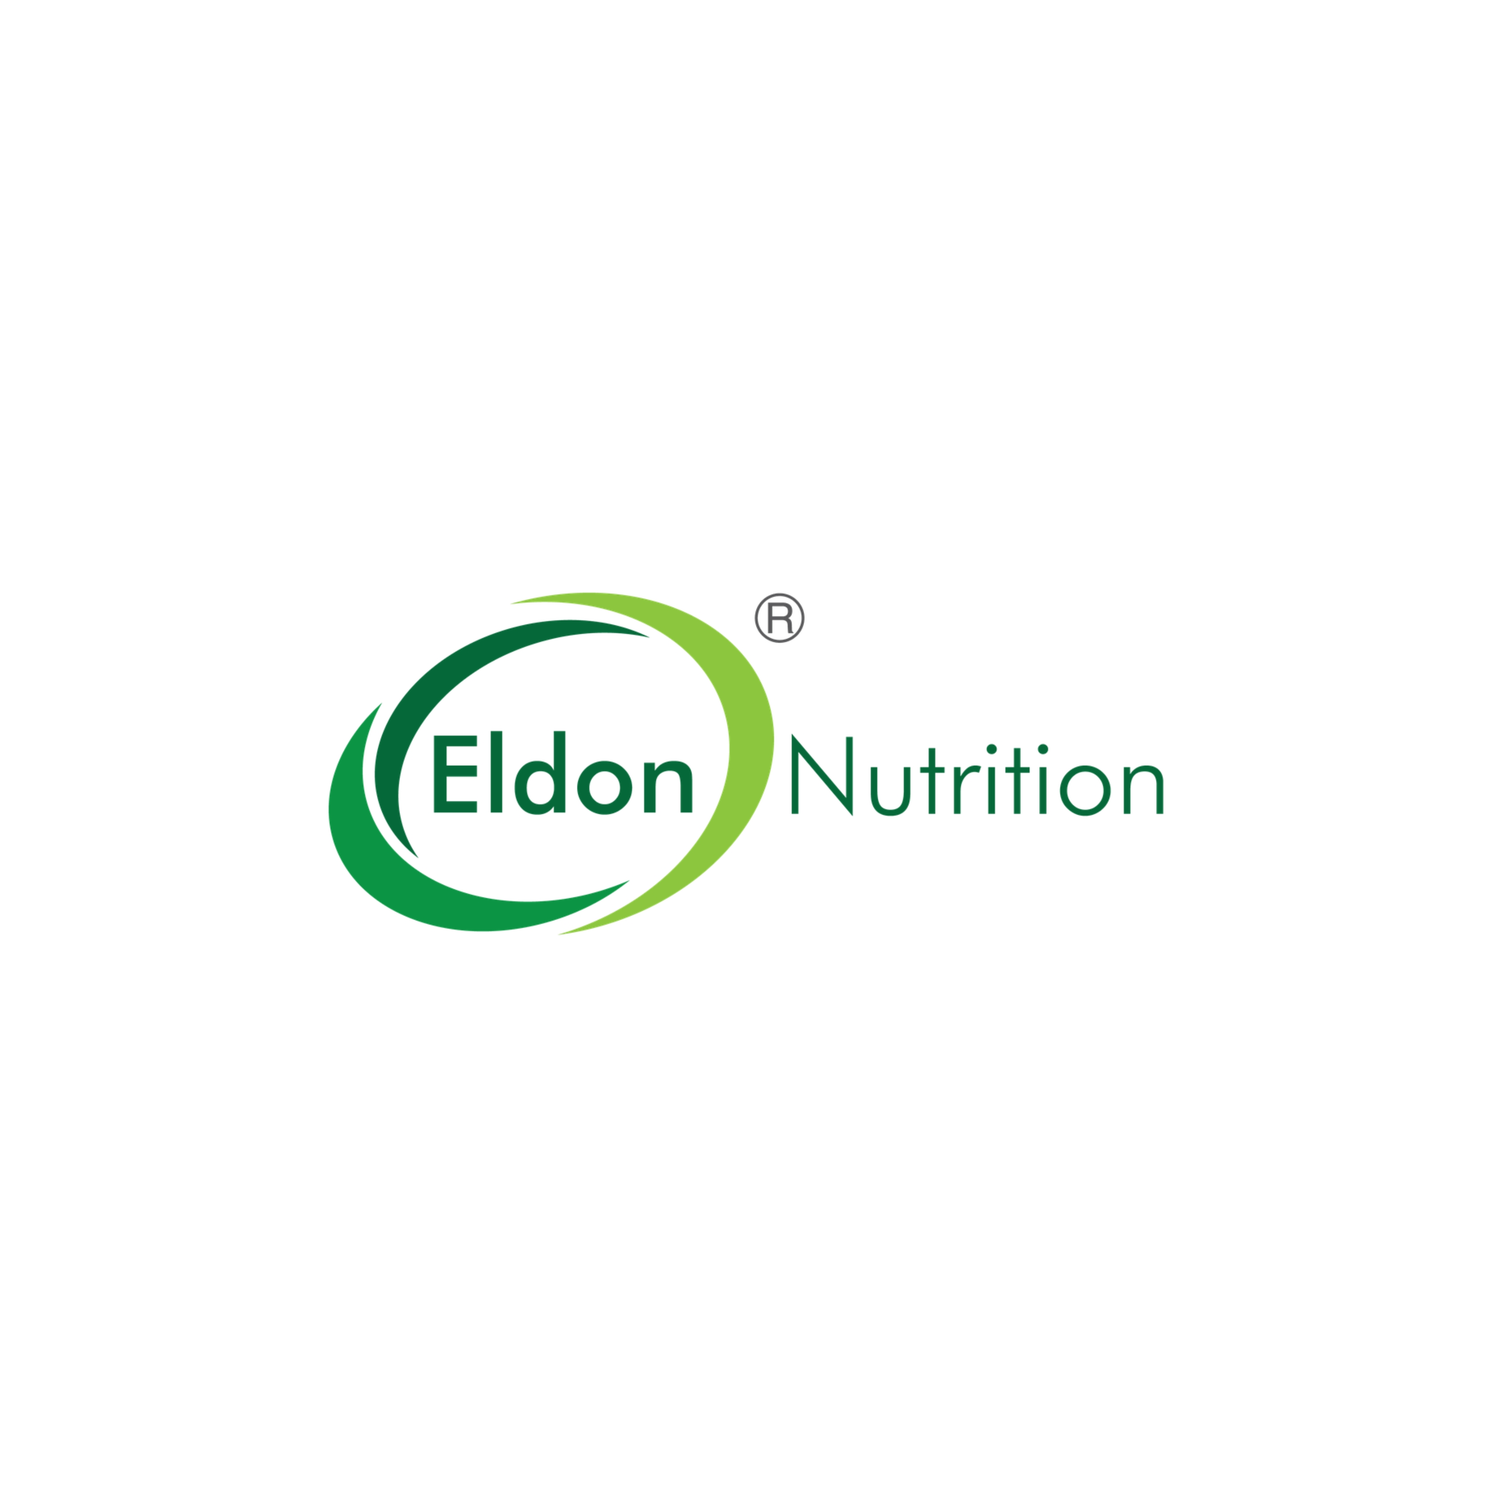 Eldon Nutrition